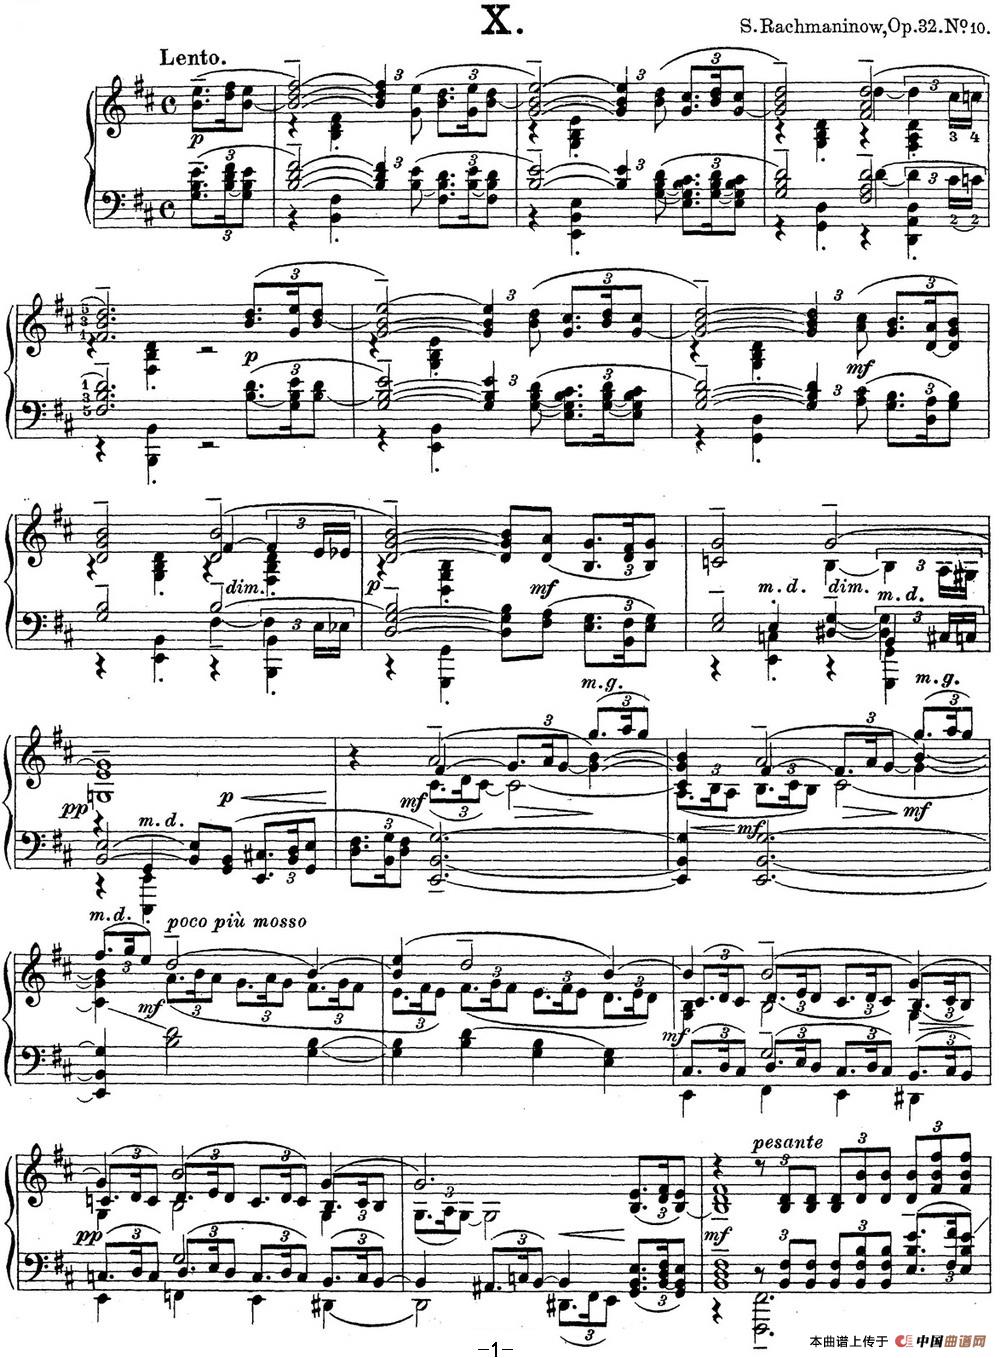 《拉赫玛尼诺夫 钢琴前奏曲21 B小调 Op.32 No.10》钢琴曲谱图分享